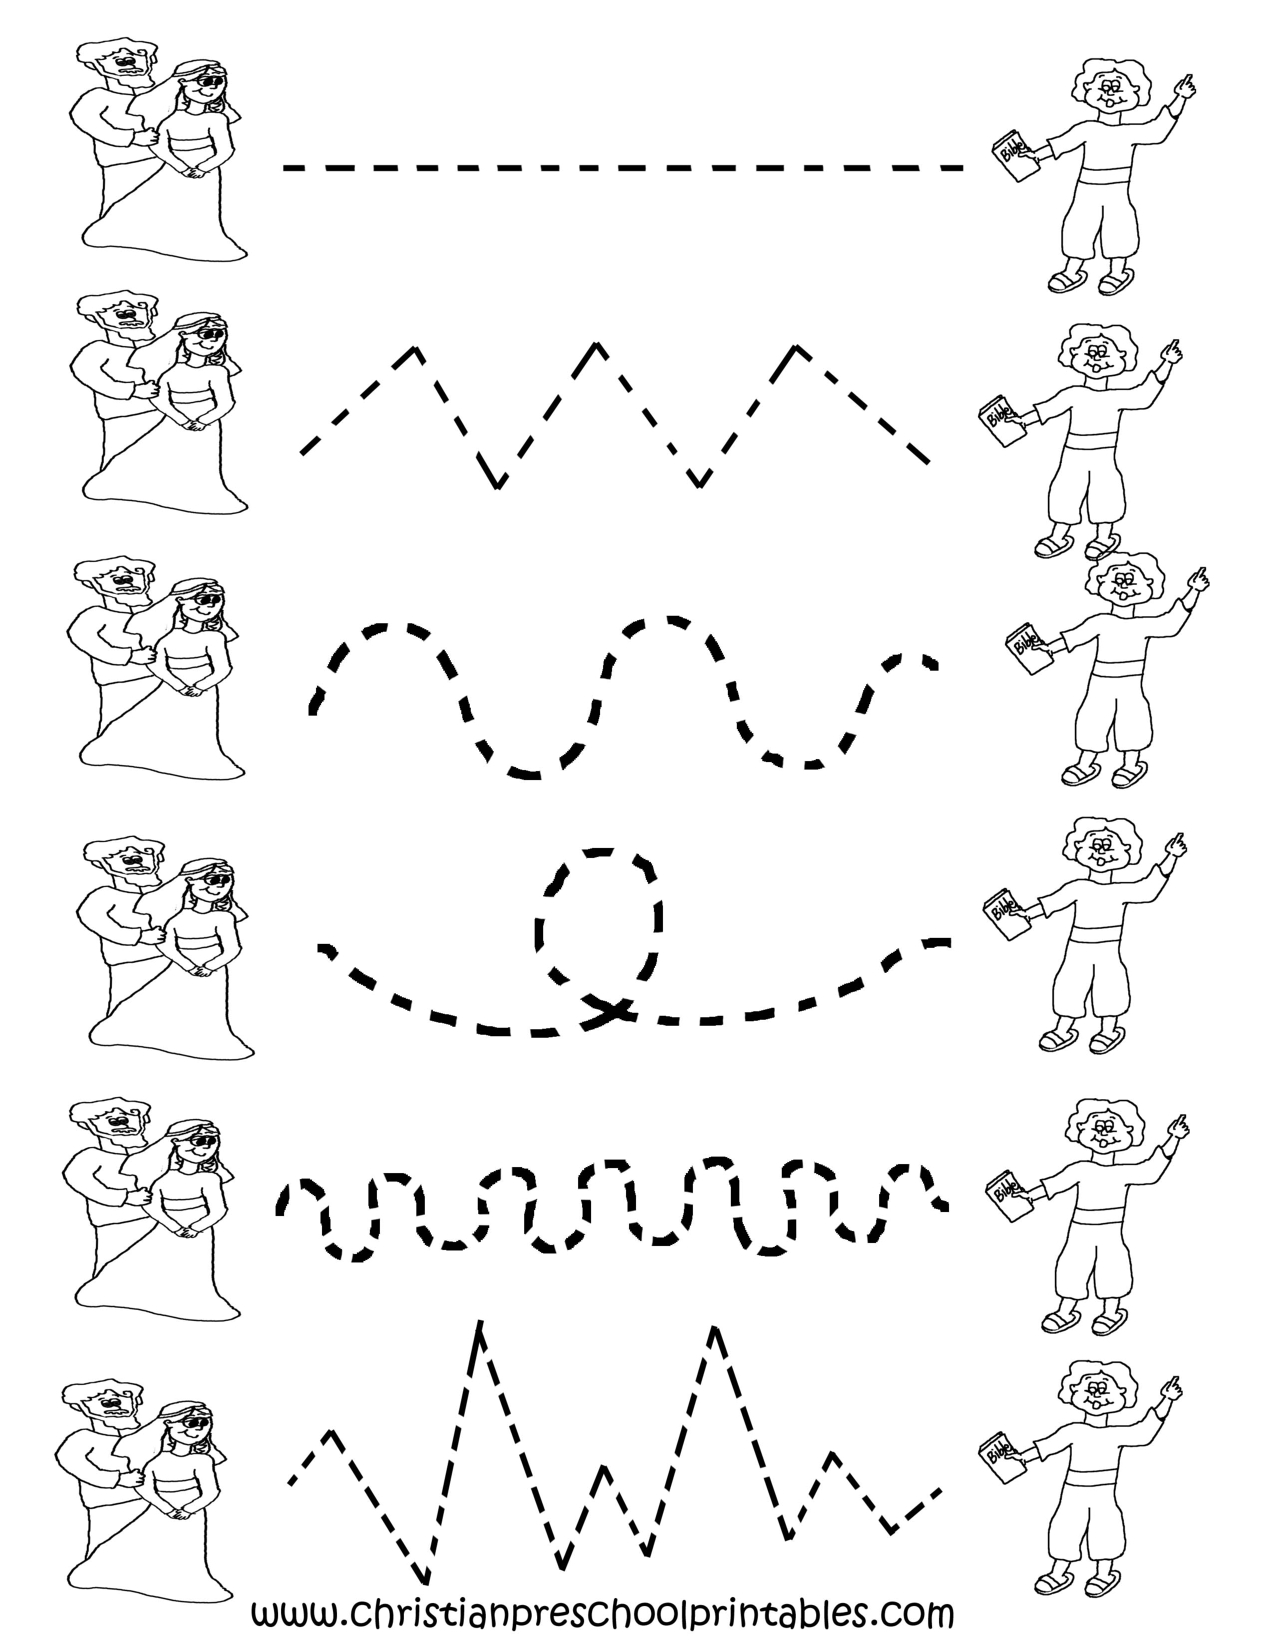 Free Printable Worksheets For Preschool | Preschool Tracing - Free Printable Preschool Worksheets Tracing Lines